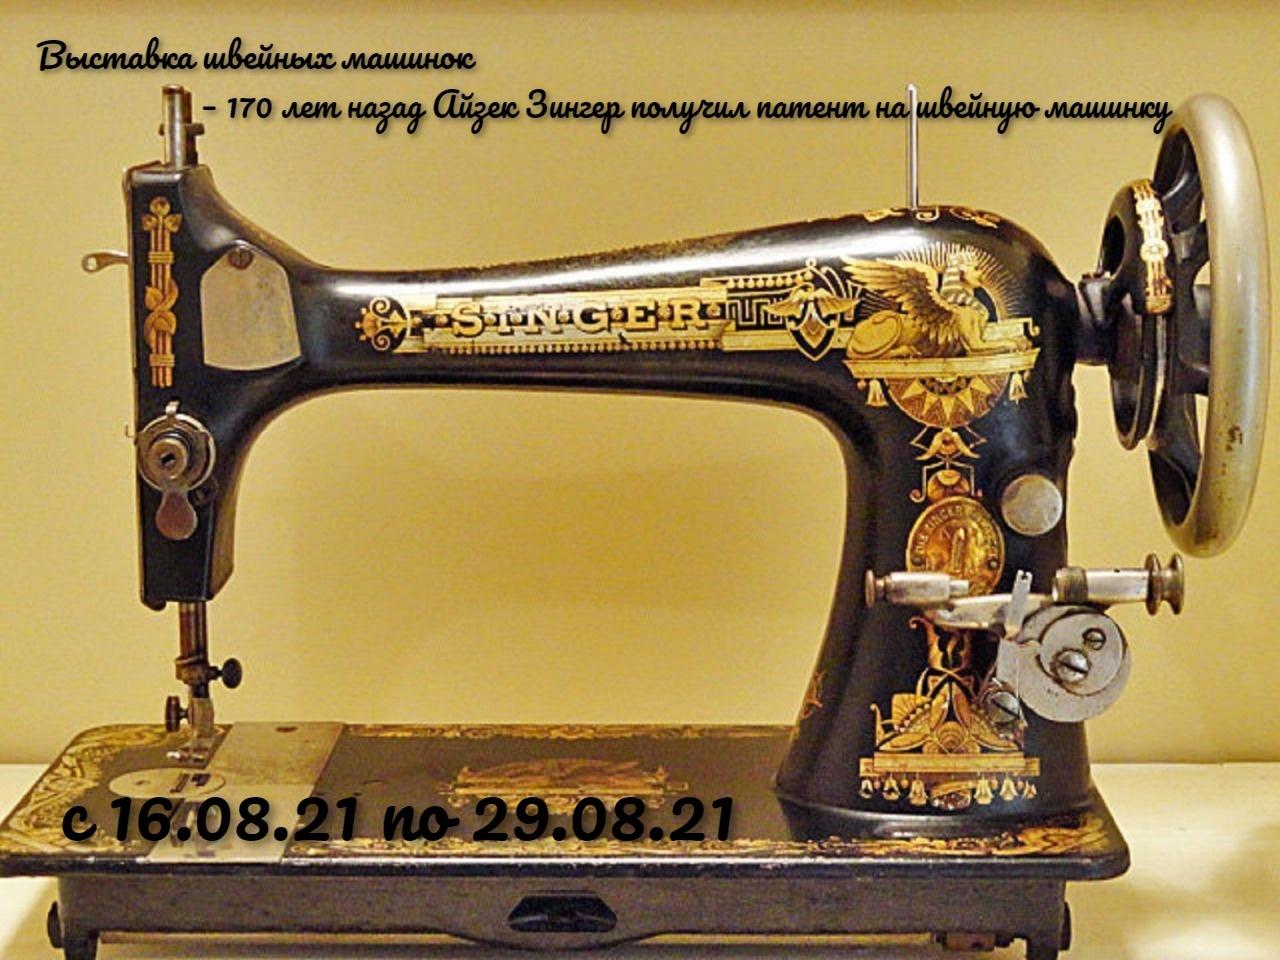 Швейная машинка 17. Швейная машинка Зингера 1841. Швейная машинка Зингер а867968. Швейная машинка Зингер s010l. Zinger швейная машинка а3535836.